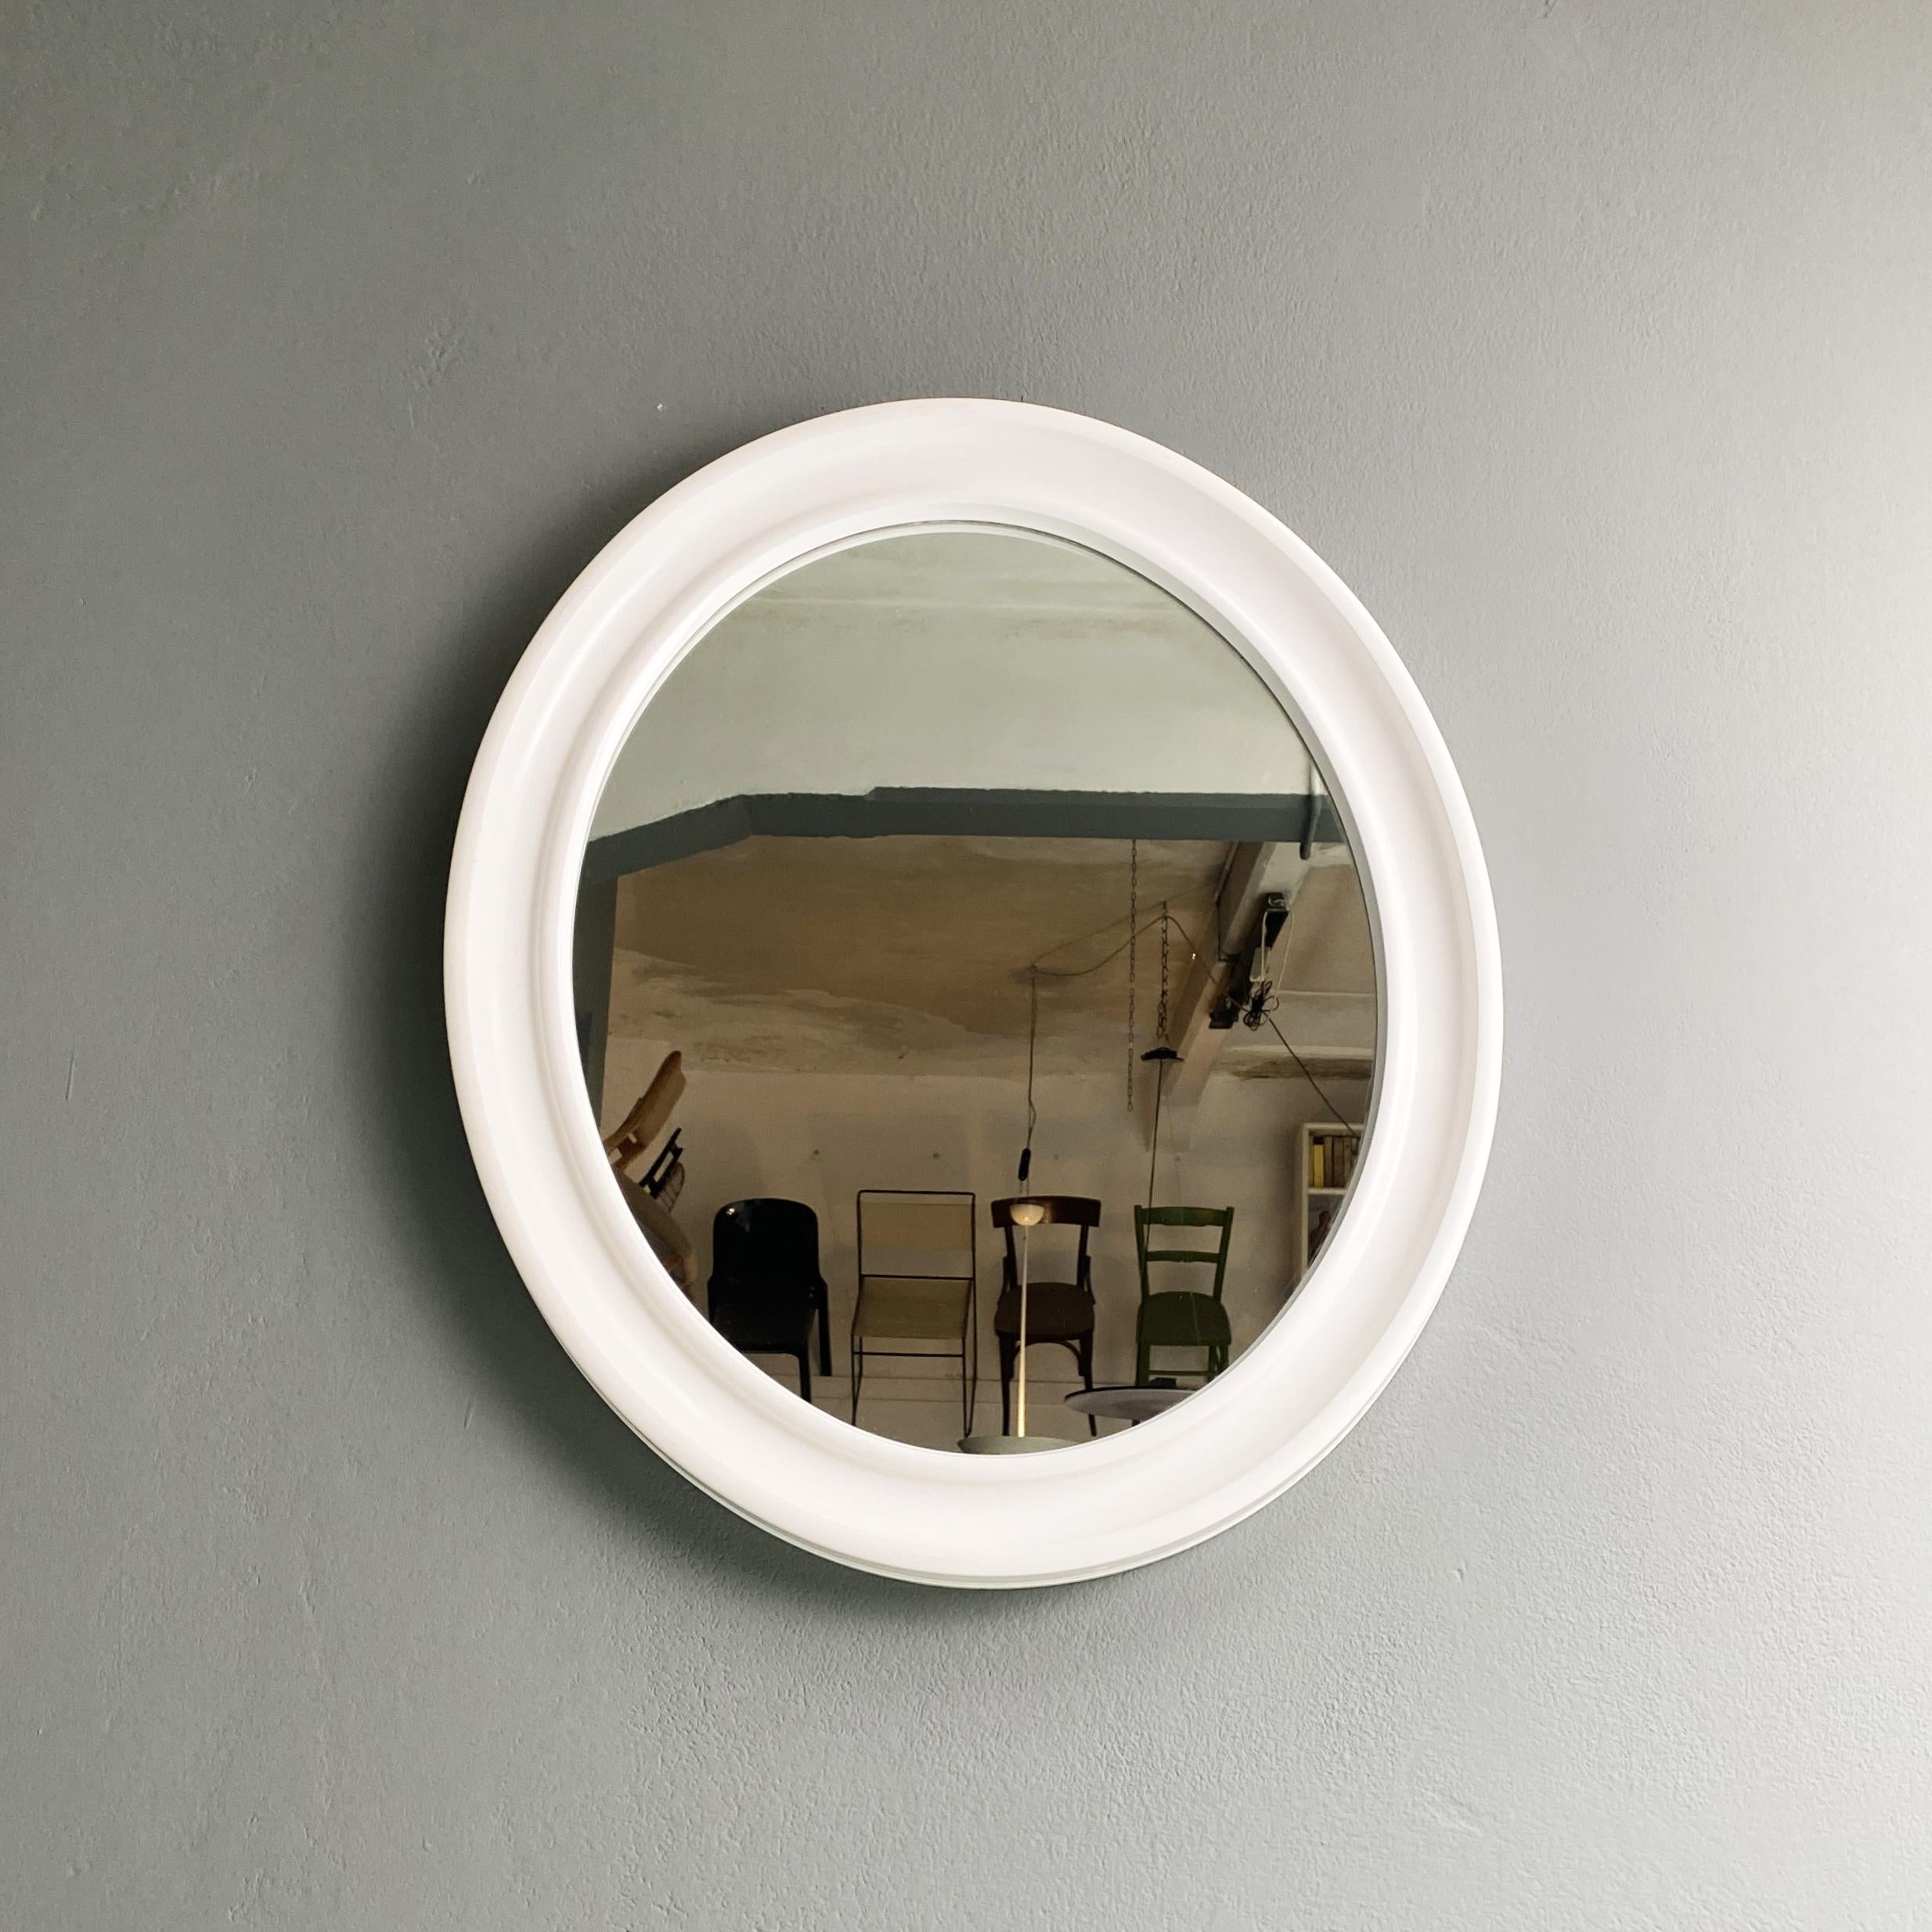 Ovaler Spiegel aus weißem Kunststoff von Carrara & Matta, 1980er Jahre
Mittelgroßer ovaler Spiegel mit weißem Kunststoffrahmen. Hergestellt von Carrara & Matta.
1980s

Gute Bedingungen

Maße in cm 57x5x67.